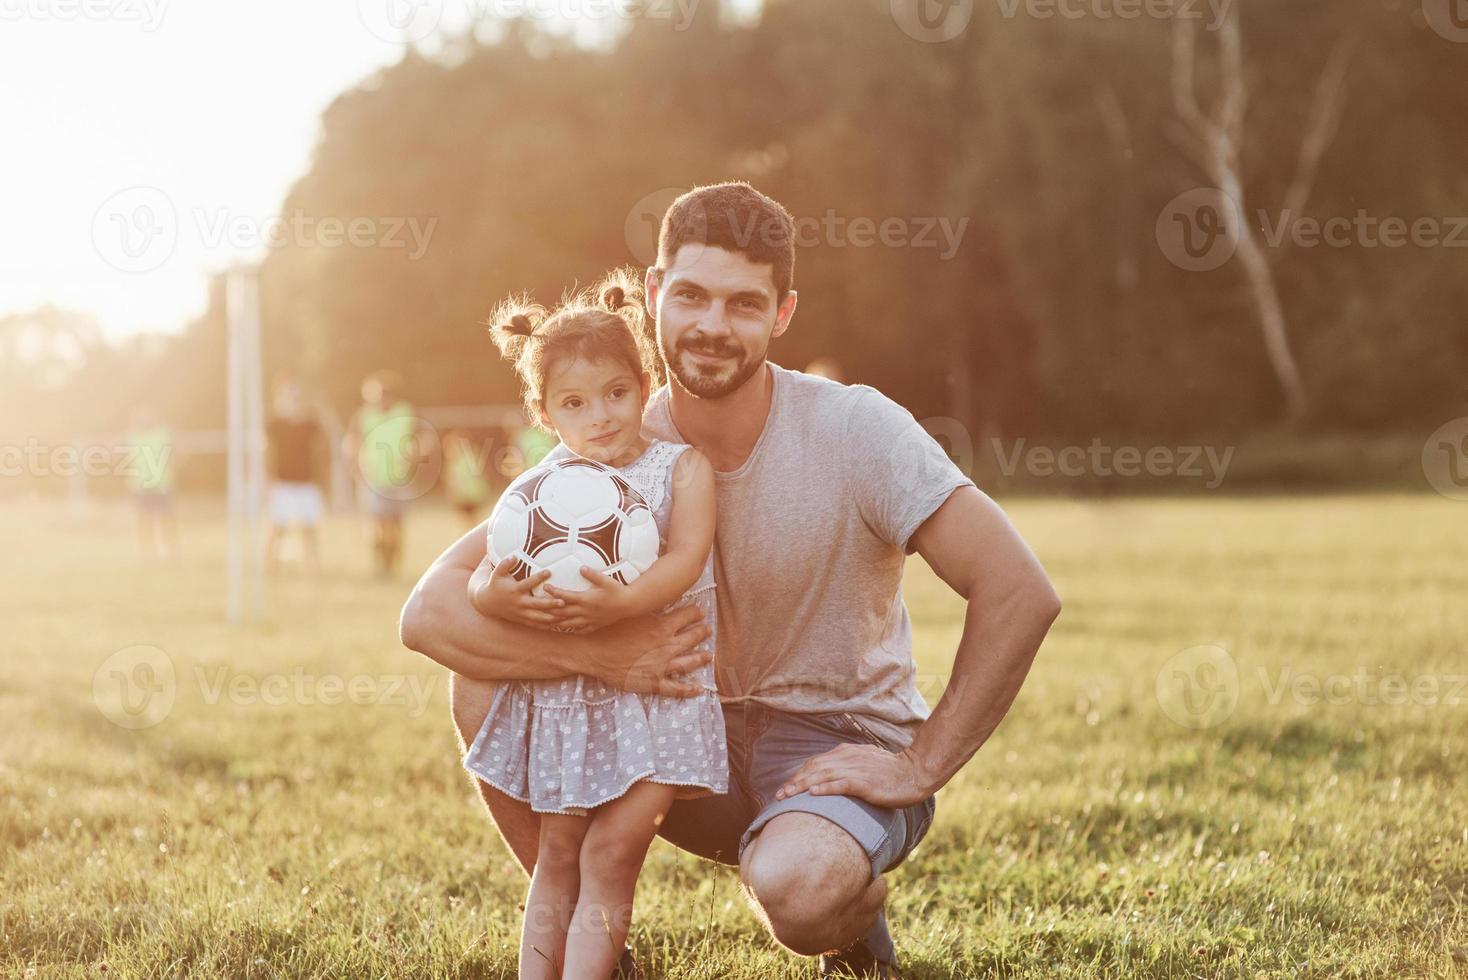 joli portrait. regardez la caméra s'il vous plaît. photo de papa avec sa fille dans une belle herbe et des bois en arrière-plan